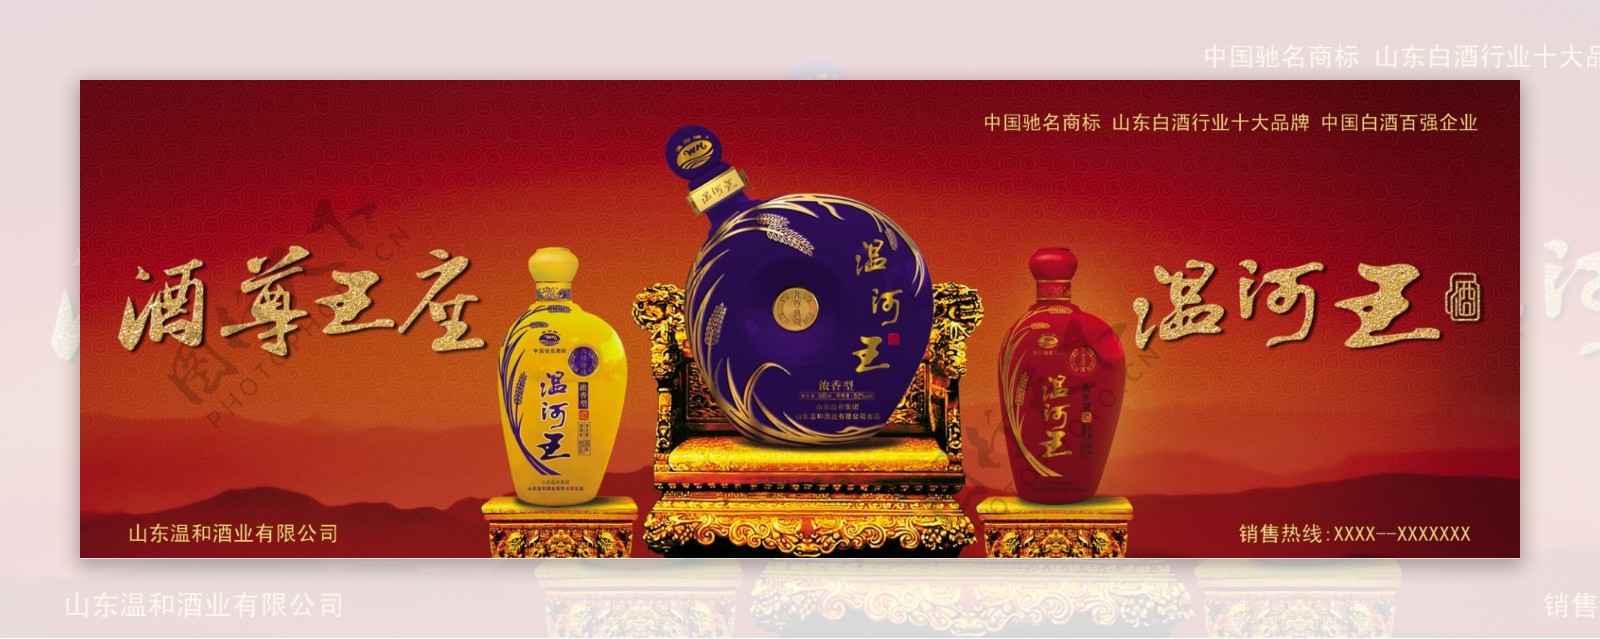 温河酒广告图片